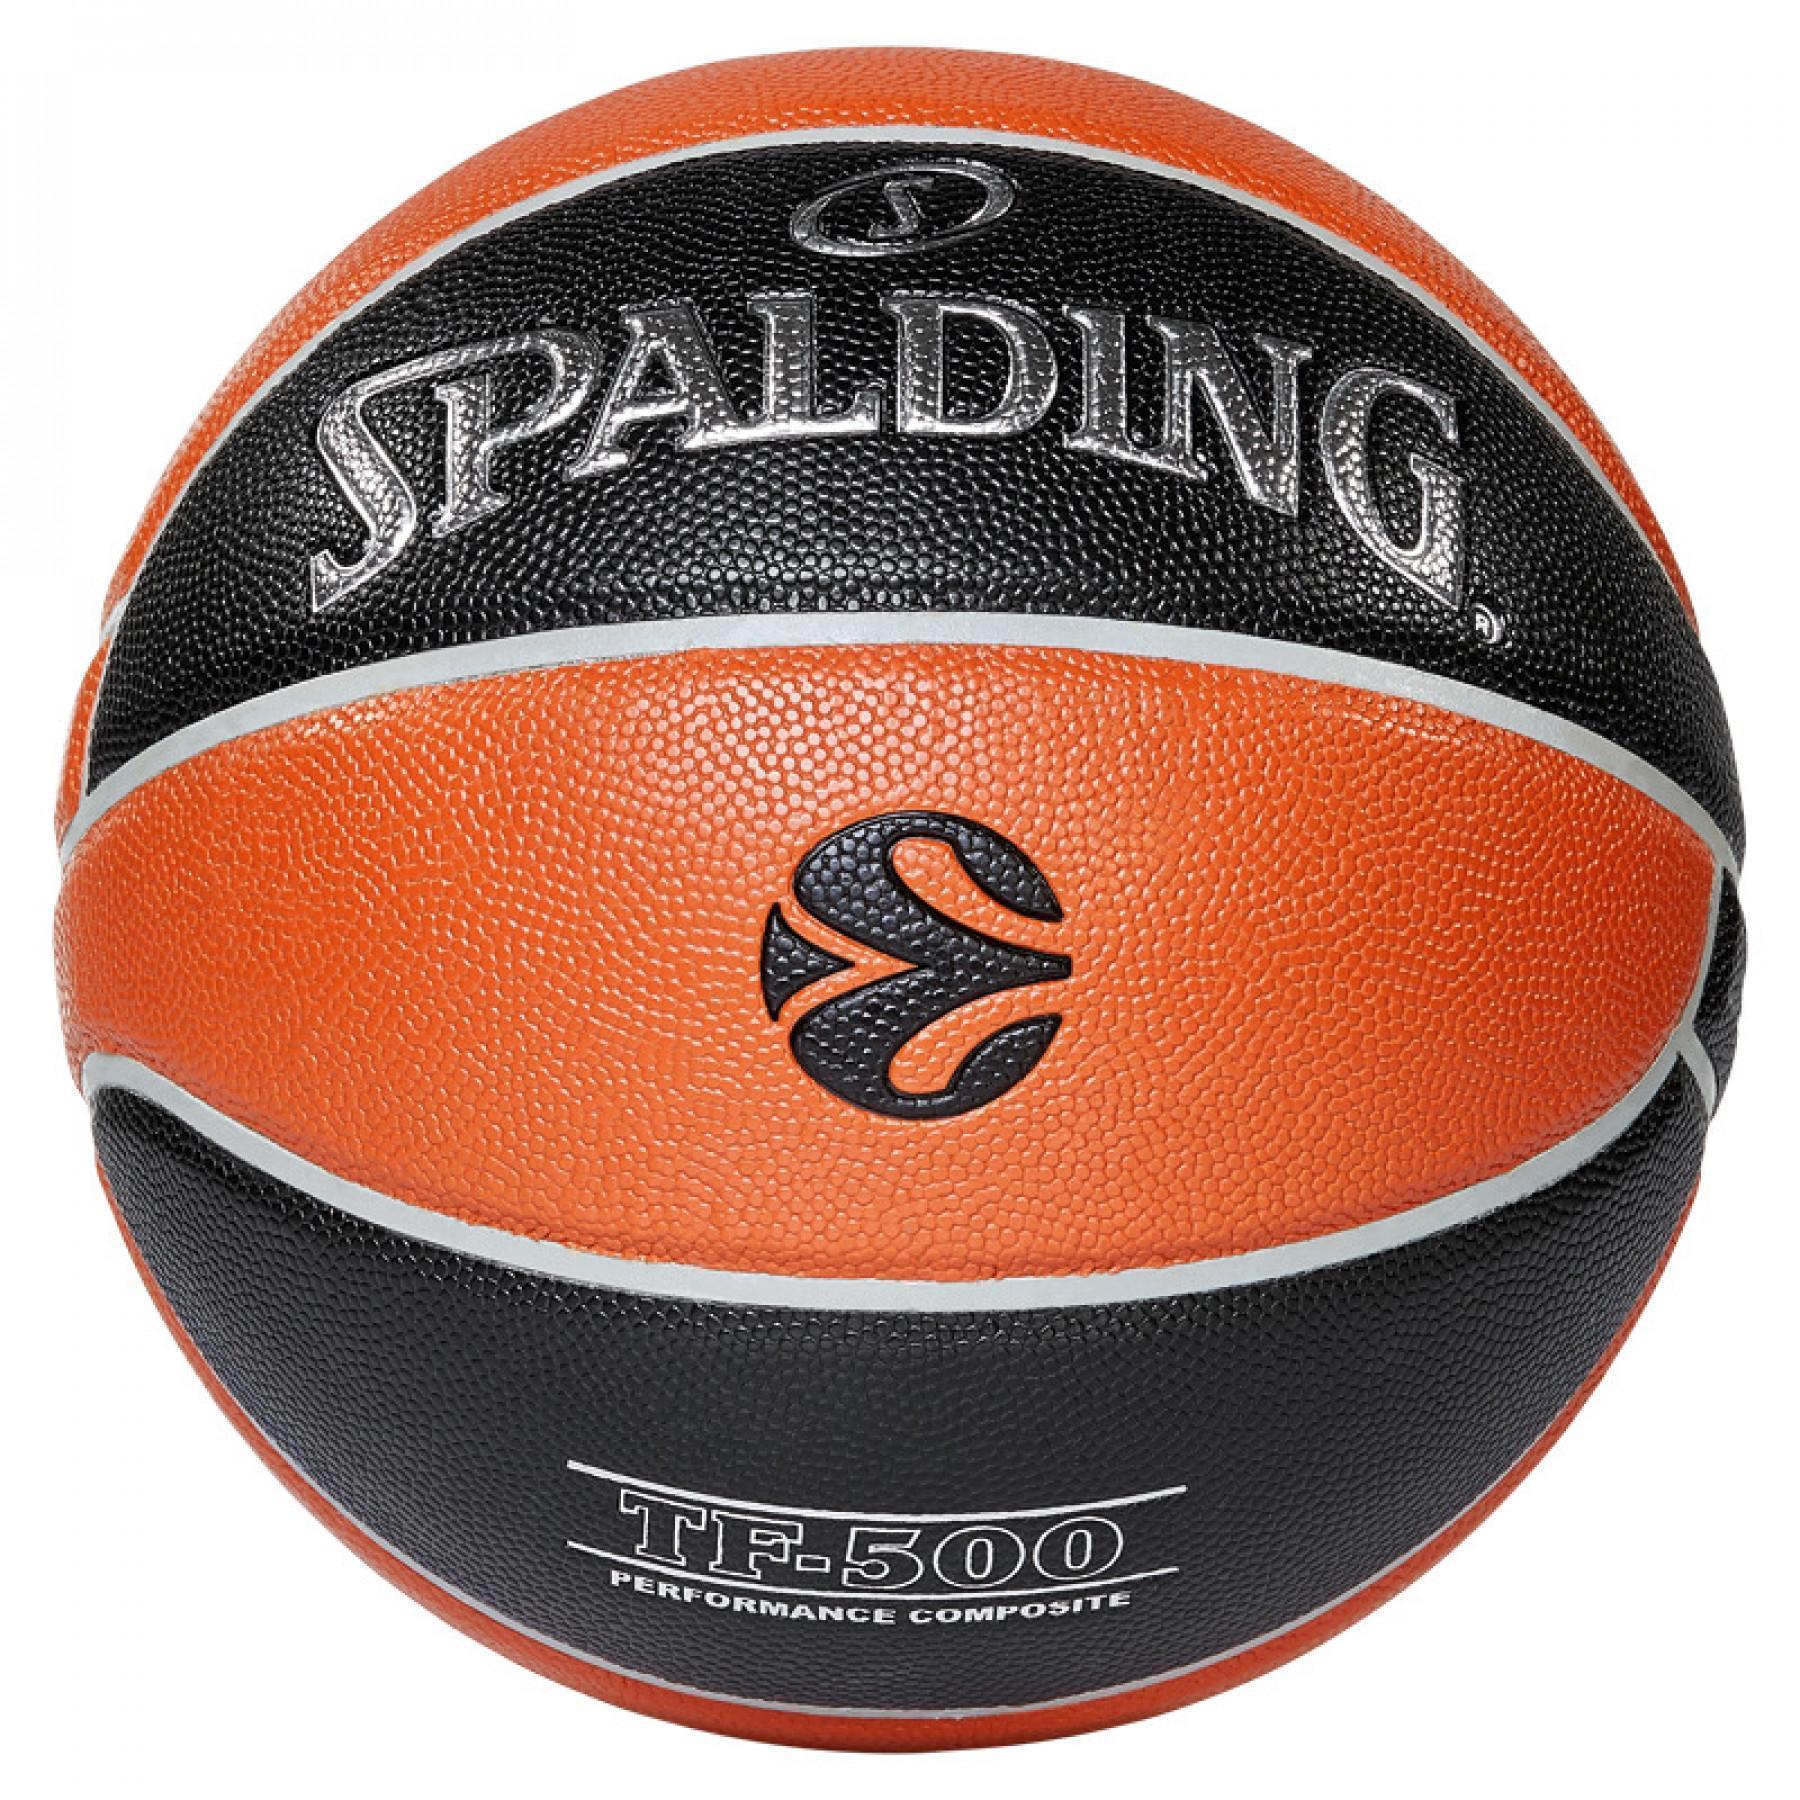 Ballon Spalding Euroleague Tf 500 In/out (84-002z)